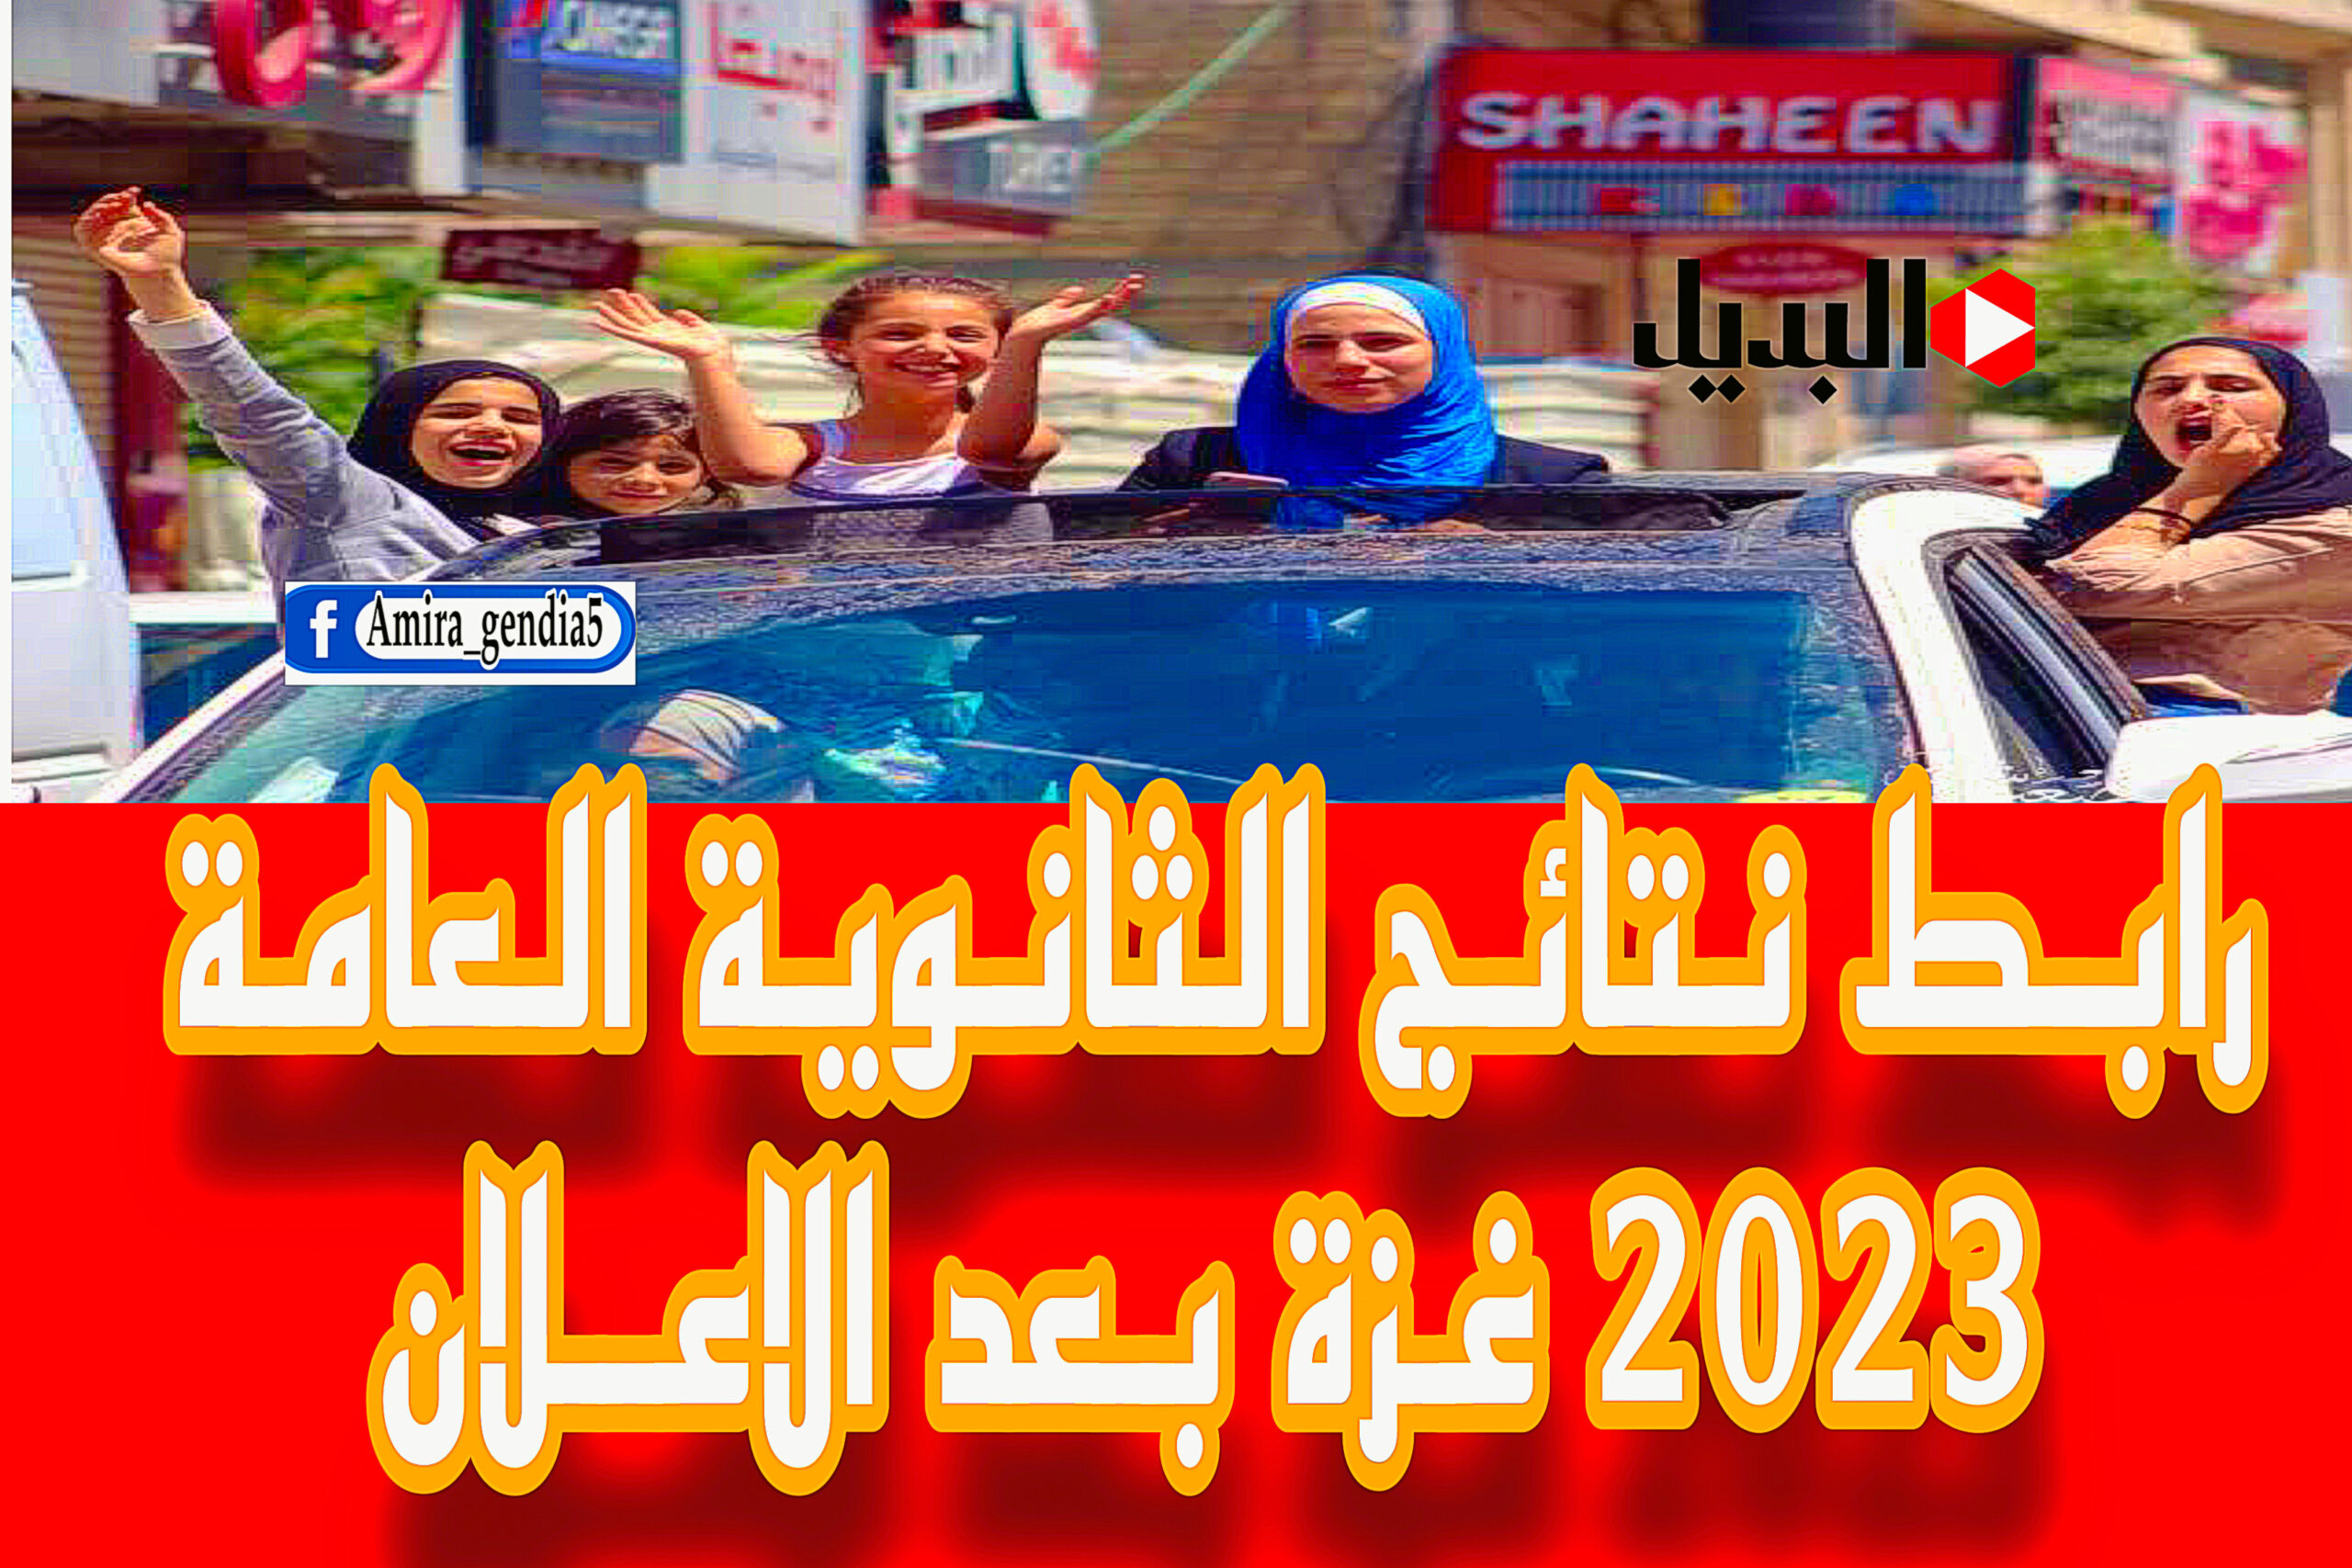 نتائج الثانوية العامة 2023 غزة